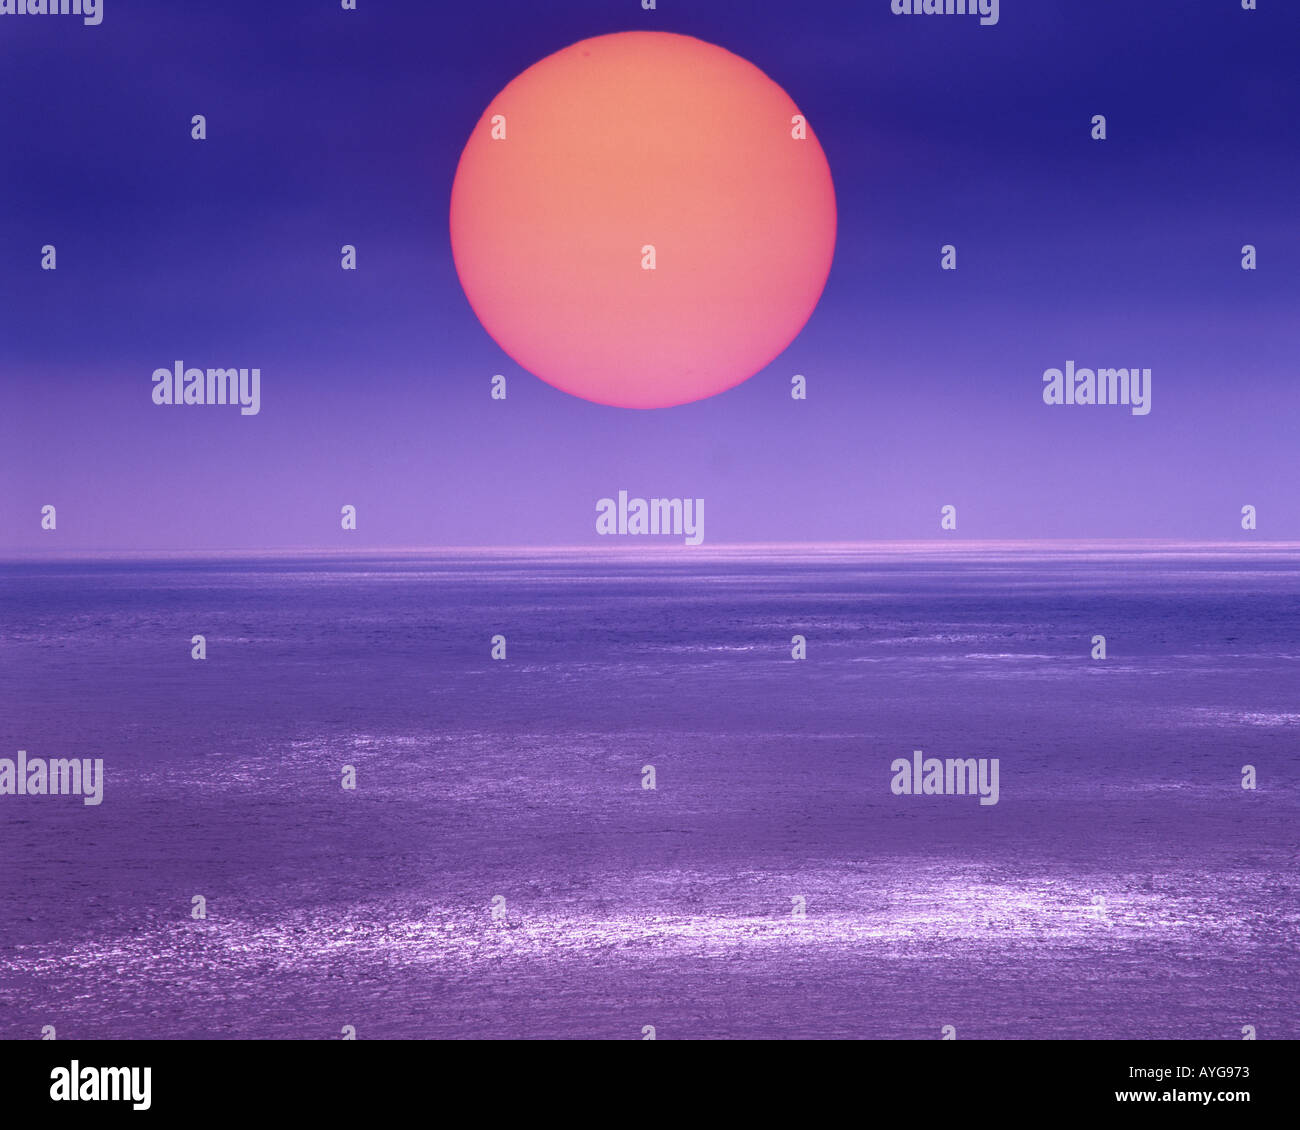 GB - CORNWALL: Puesta de sol en el Atlántico en Lands End Foto de stock